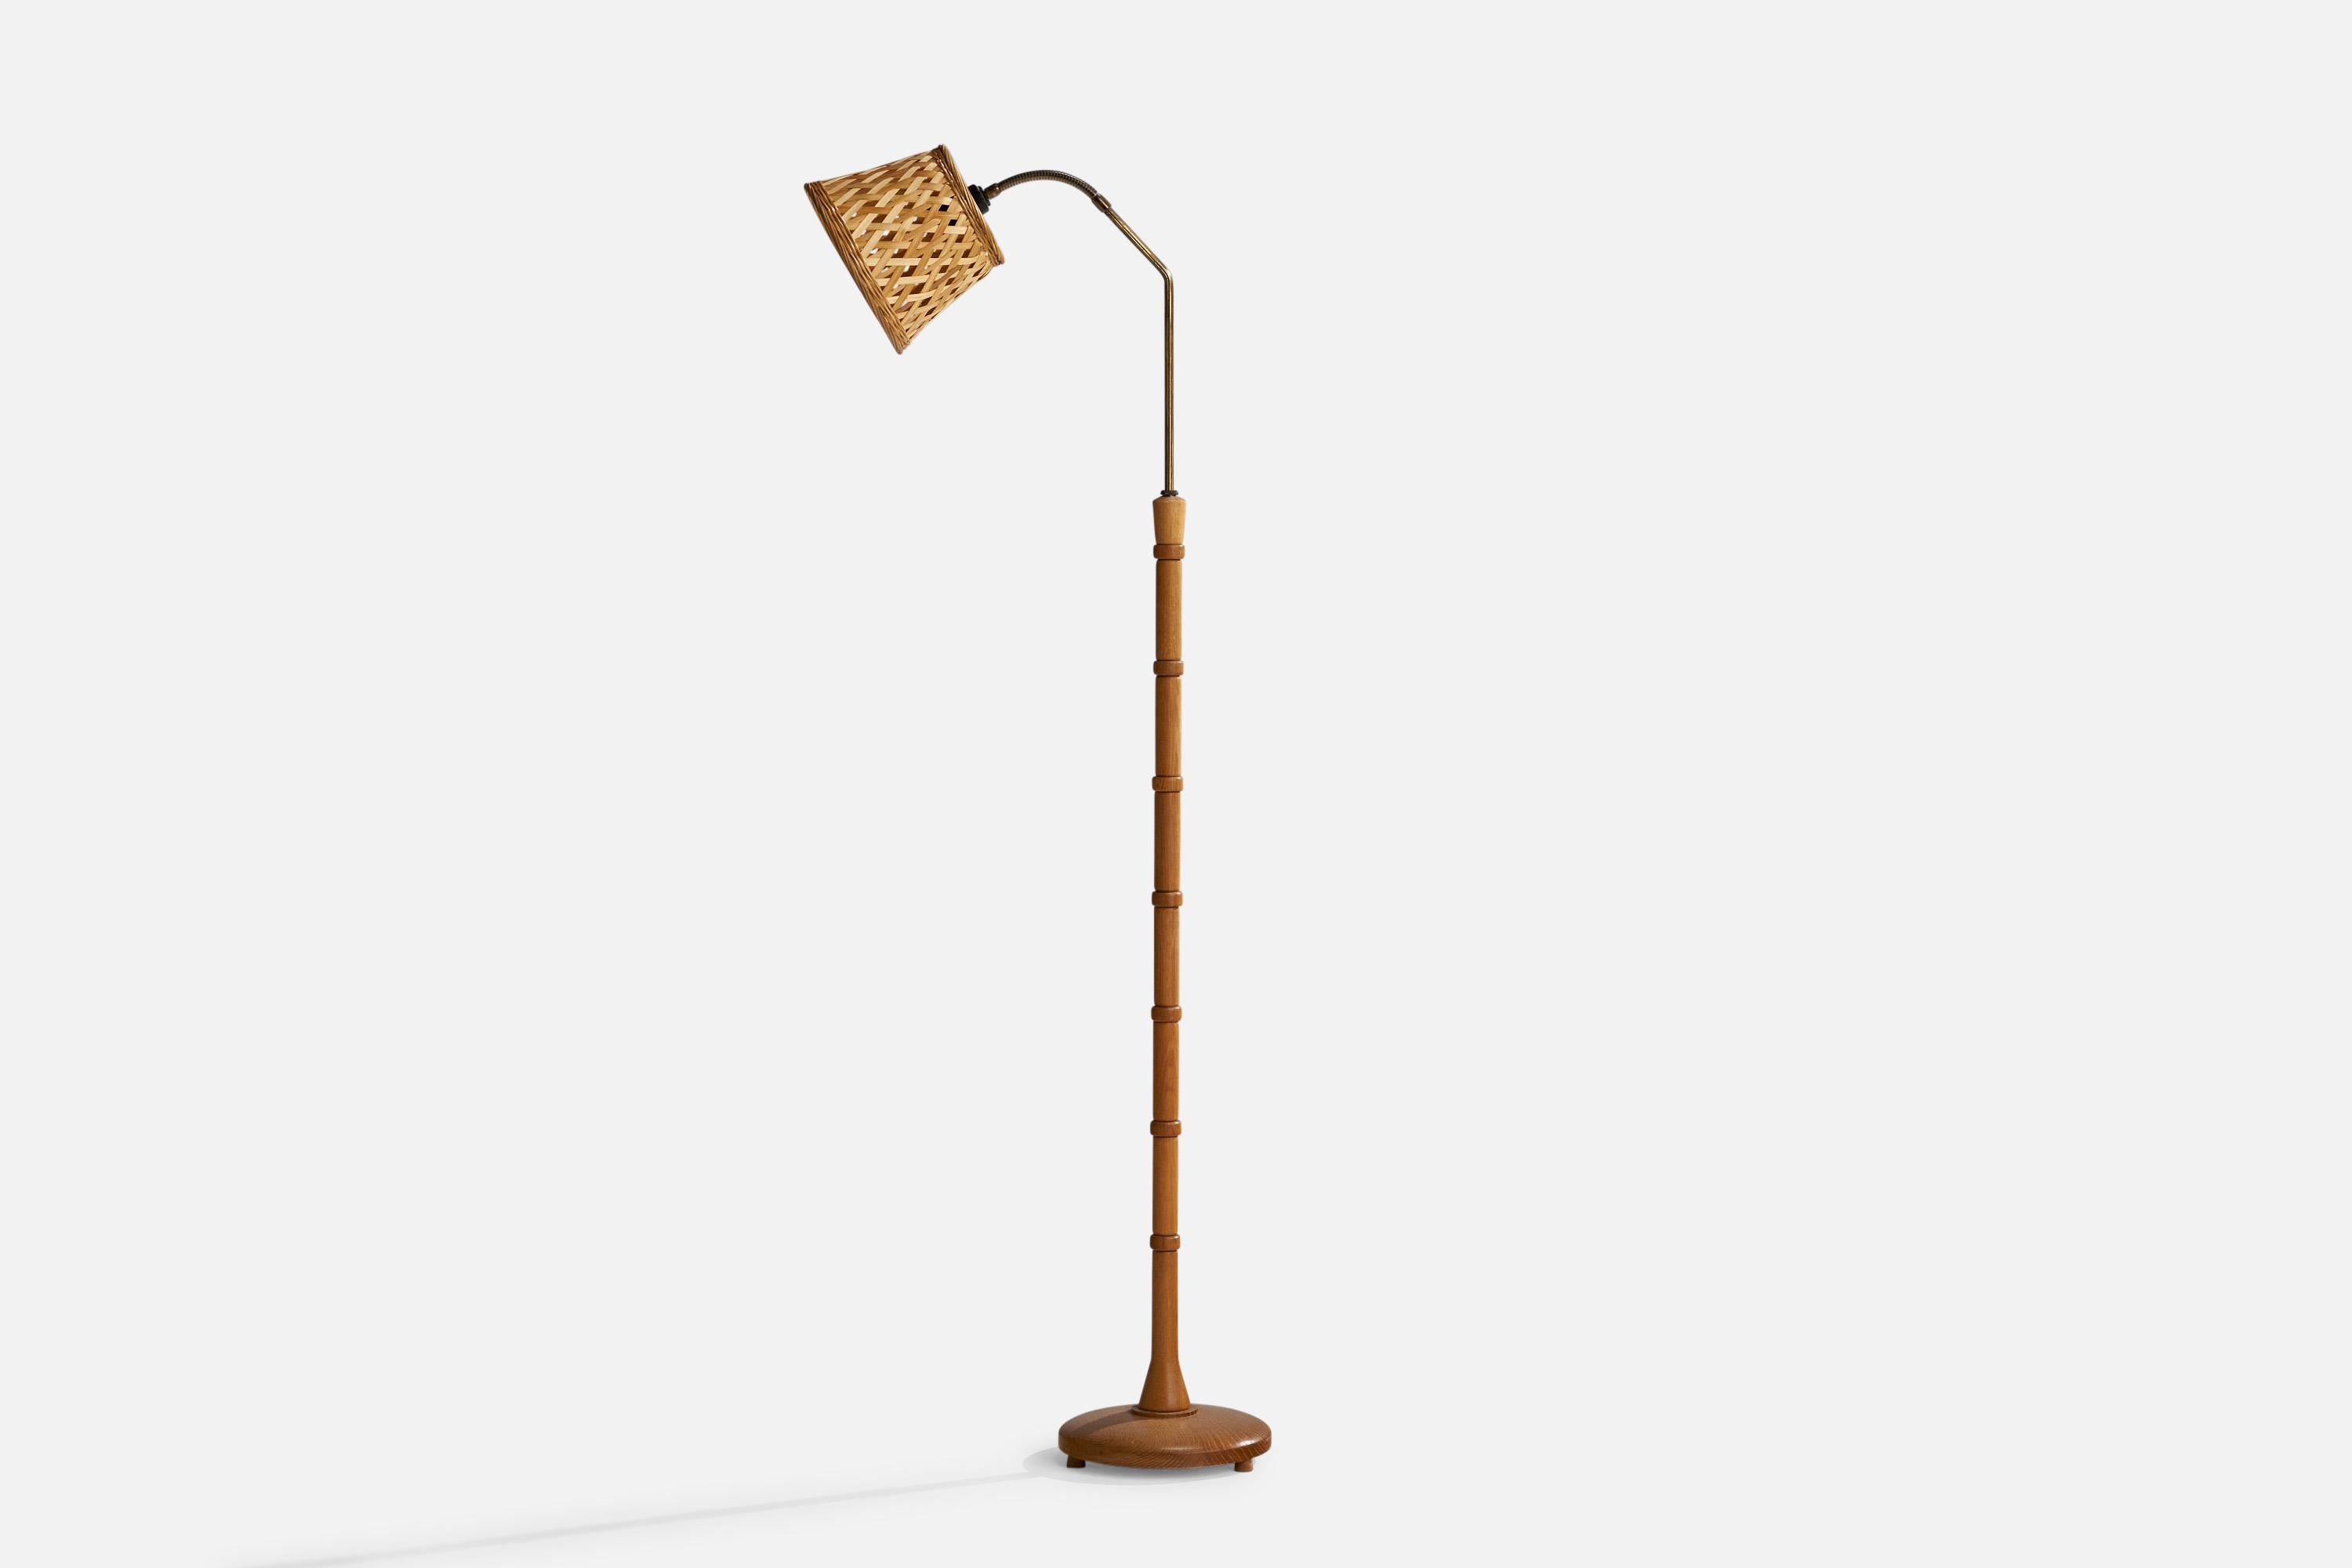 Verstellbare Stehlampe aus Eiche, Messing und Rattan, entworfen und hergestellt in Schweden, ca. 1940er Jahre.

Abmessungen variabel
Gesamtabmessungen (Zoll): 52